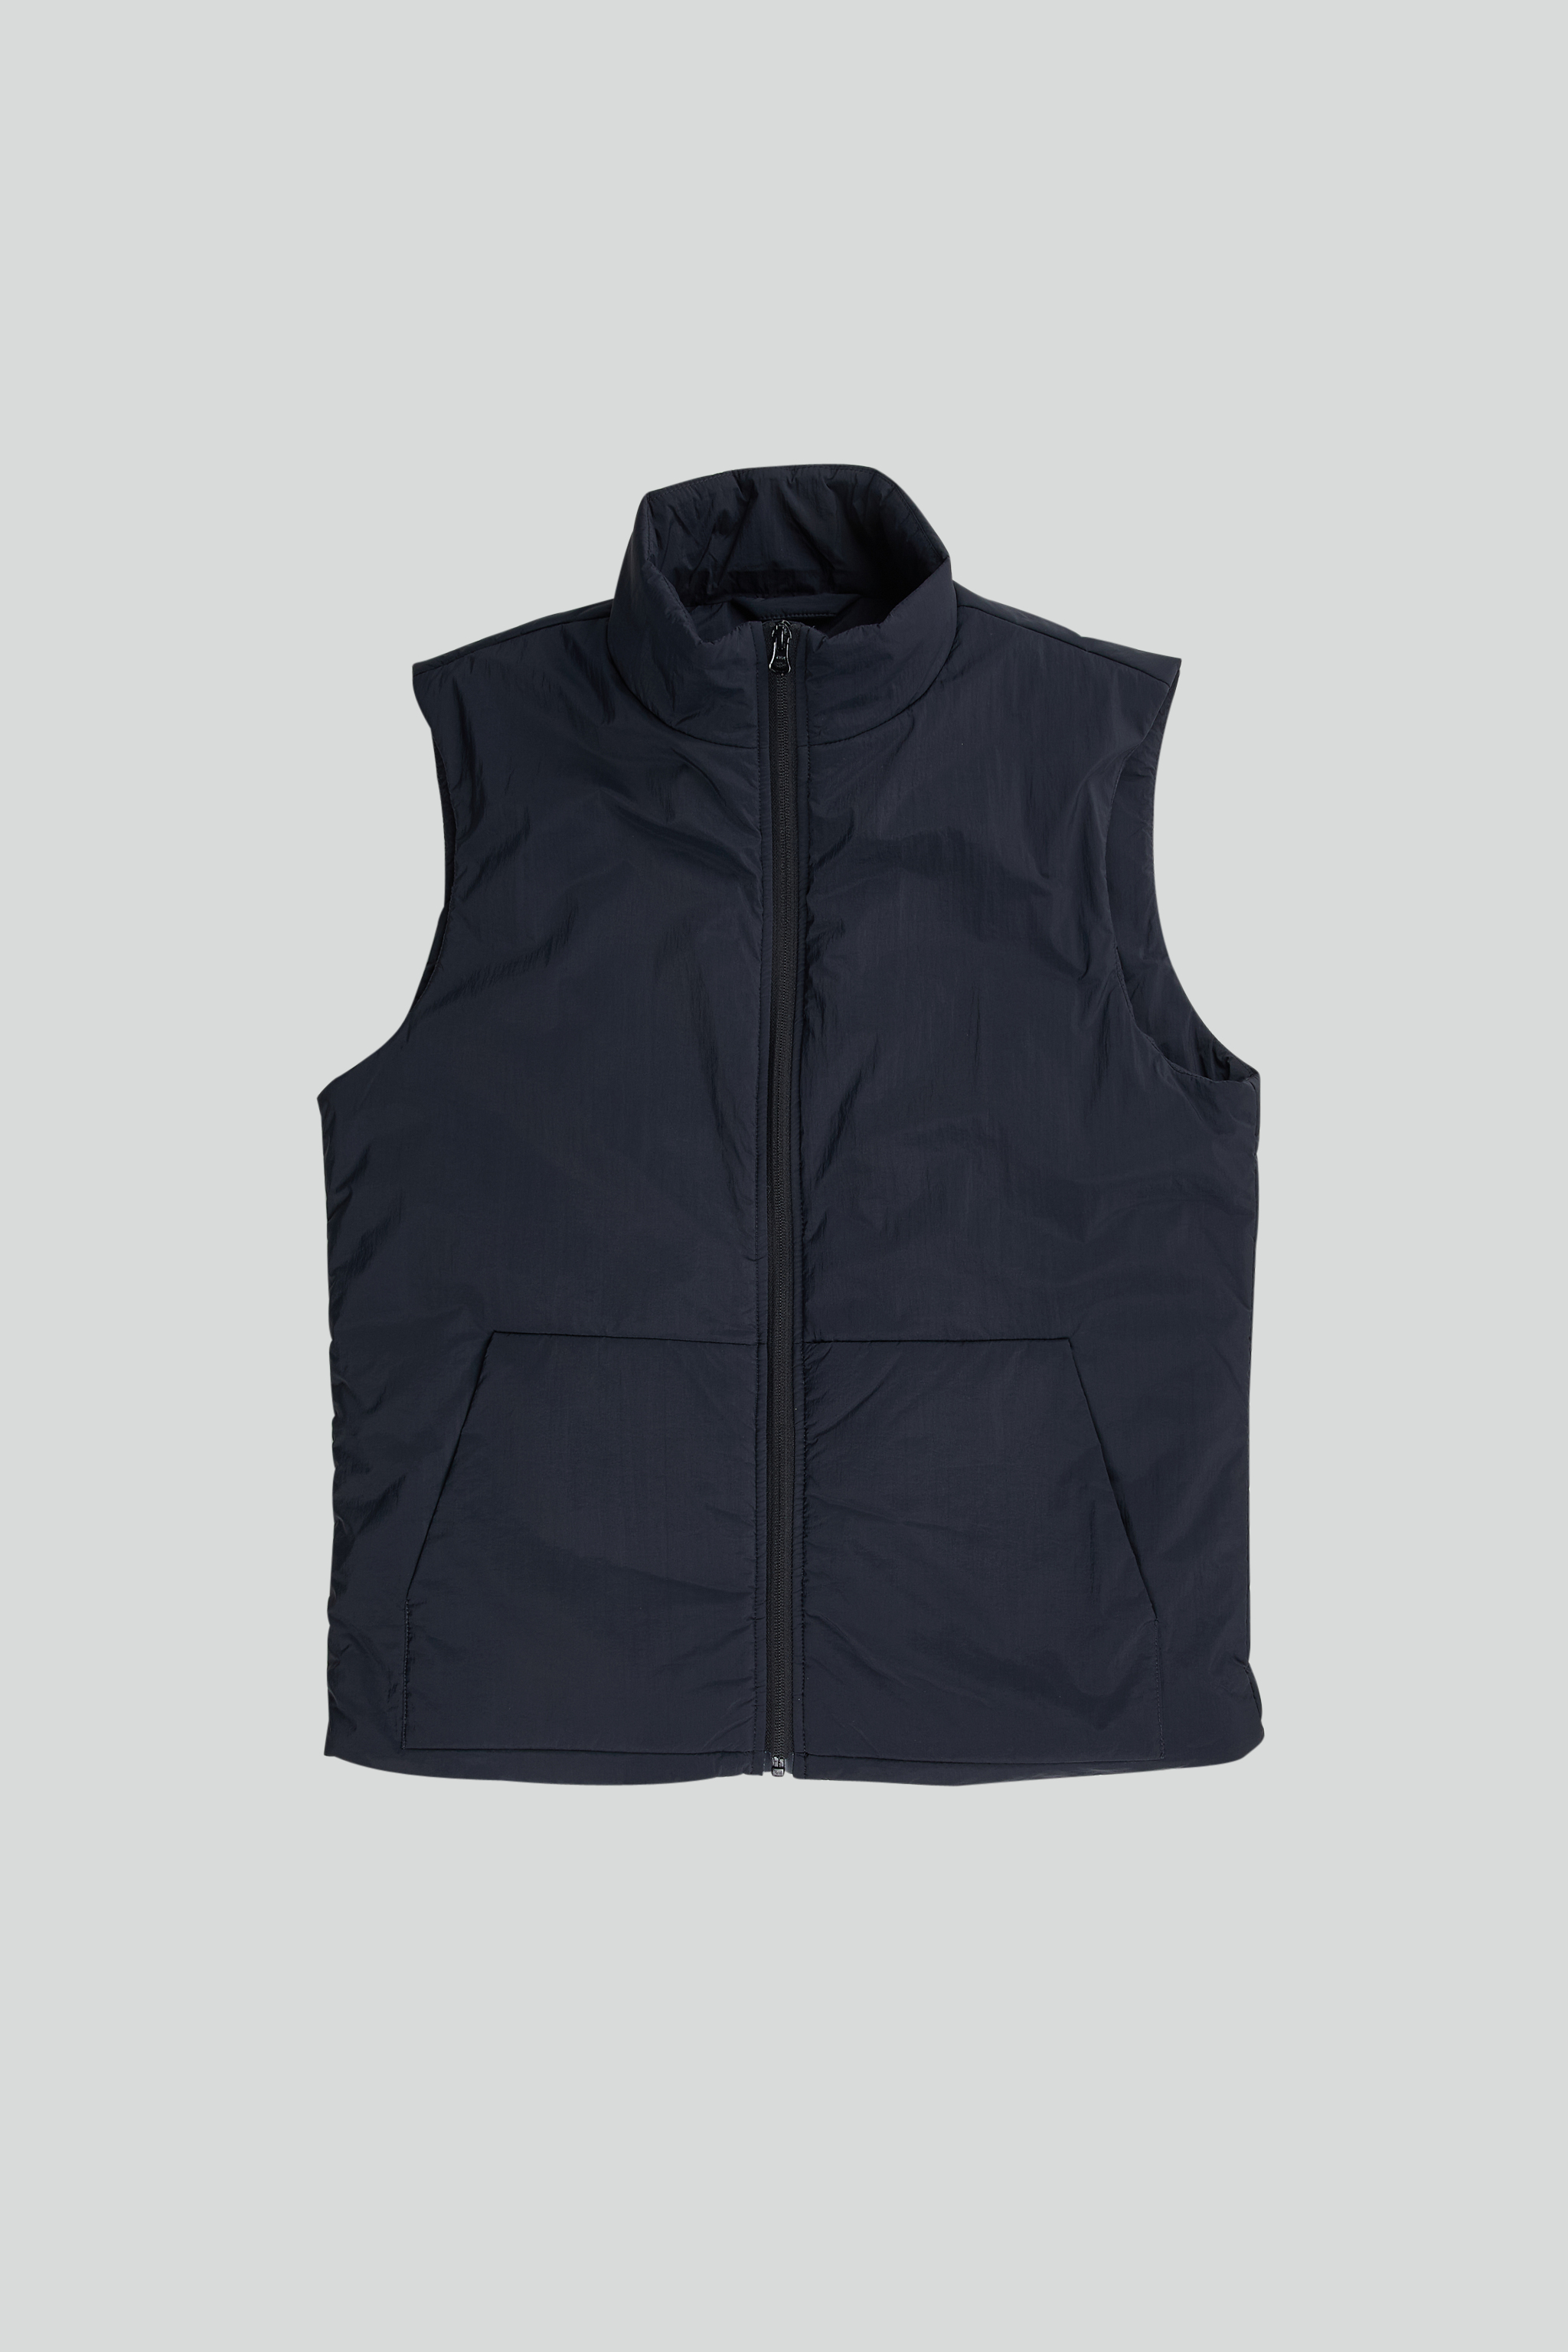 Verve 8245 men's vest - Black - Buy online at NN.07®